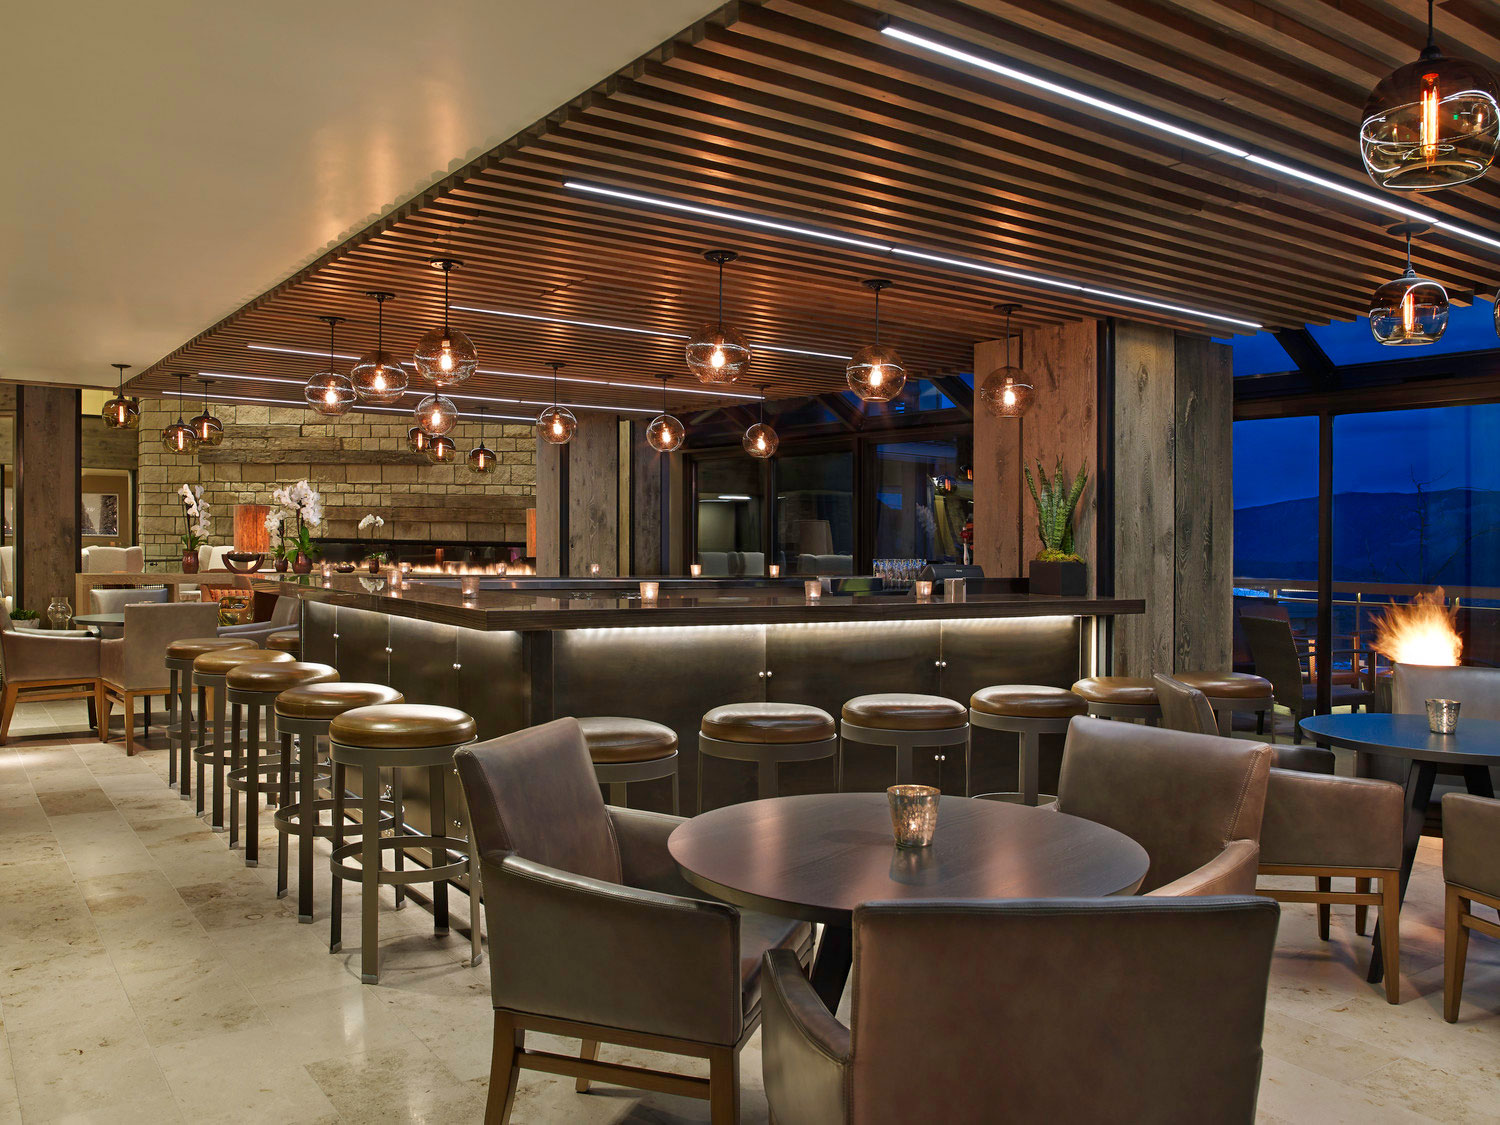 The Westin Snowmass Bar & Lounge - Aspen, CO